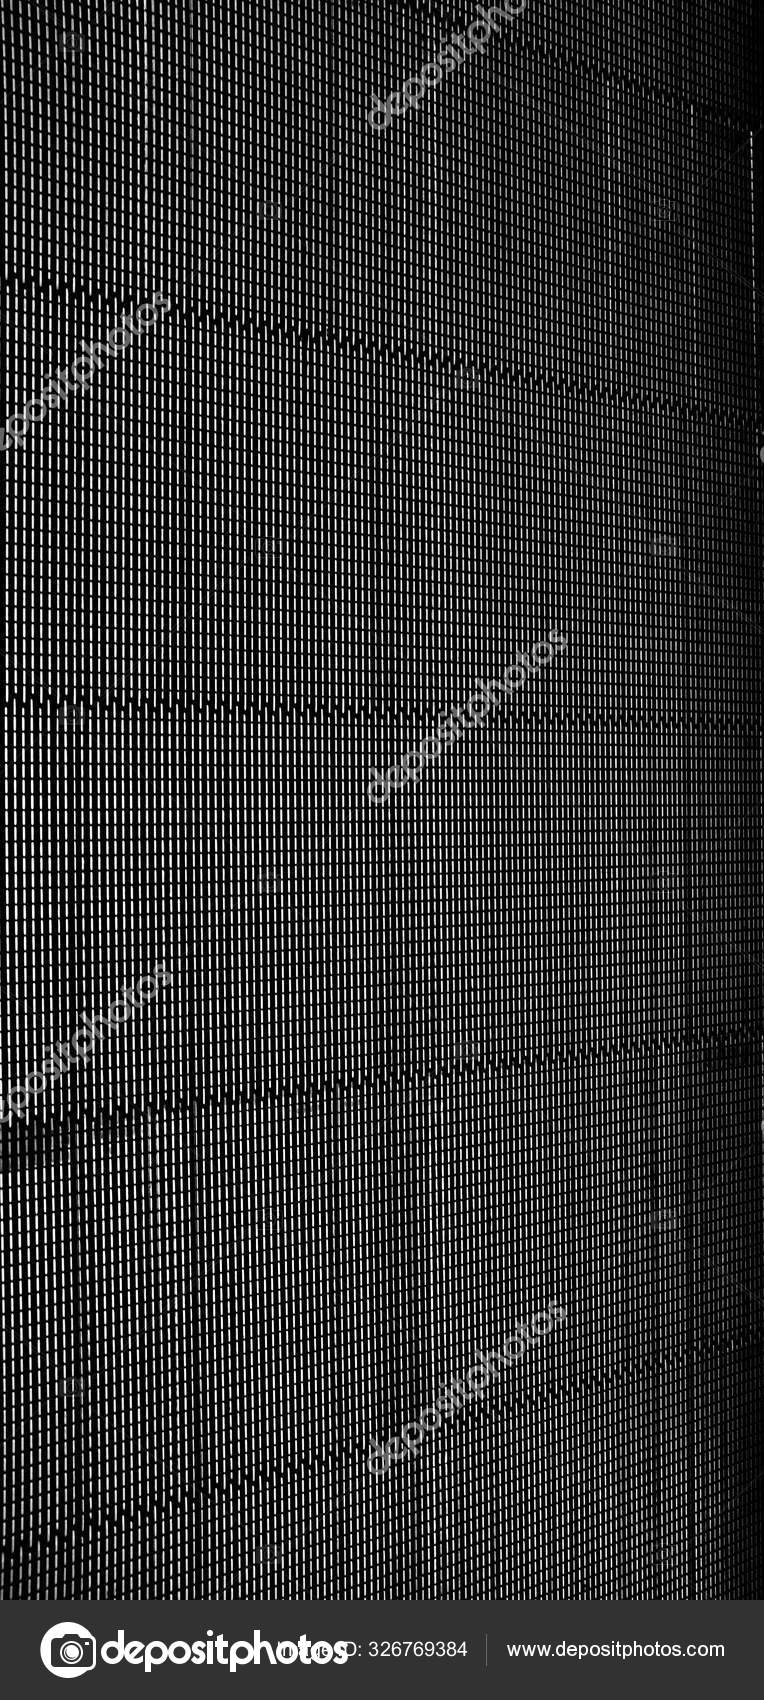 レイヤーとラインと黒と白の画面のクールなグレースケールの壁紙 ストック写真 C Wirestock